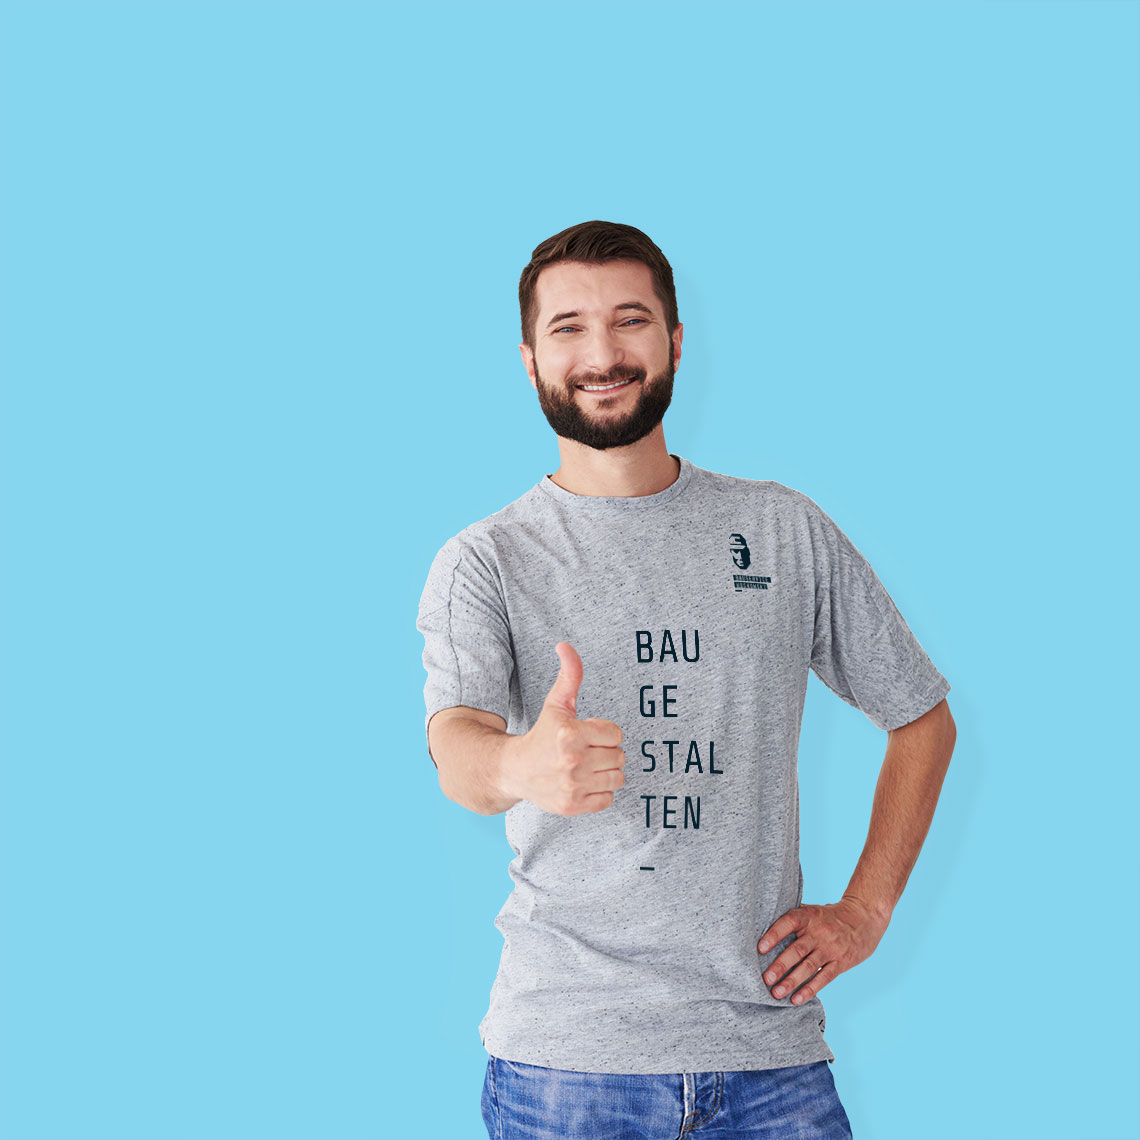 Bauservice T-Shirt Branding